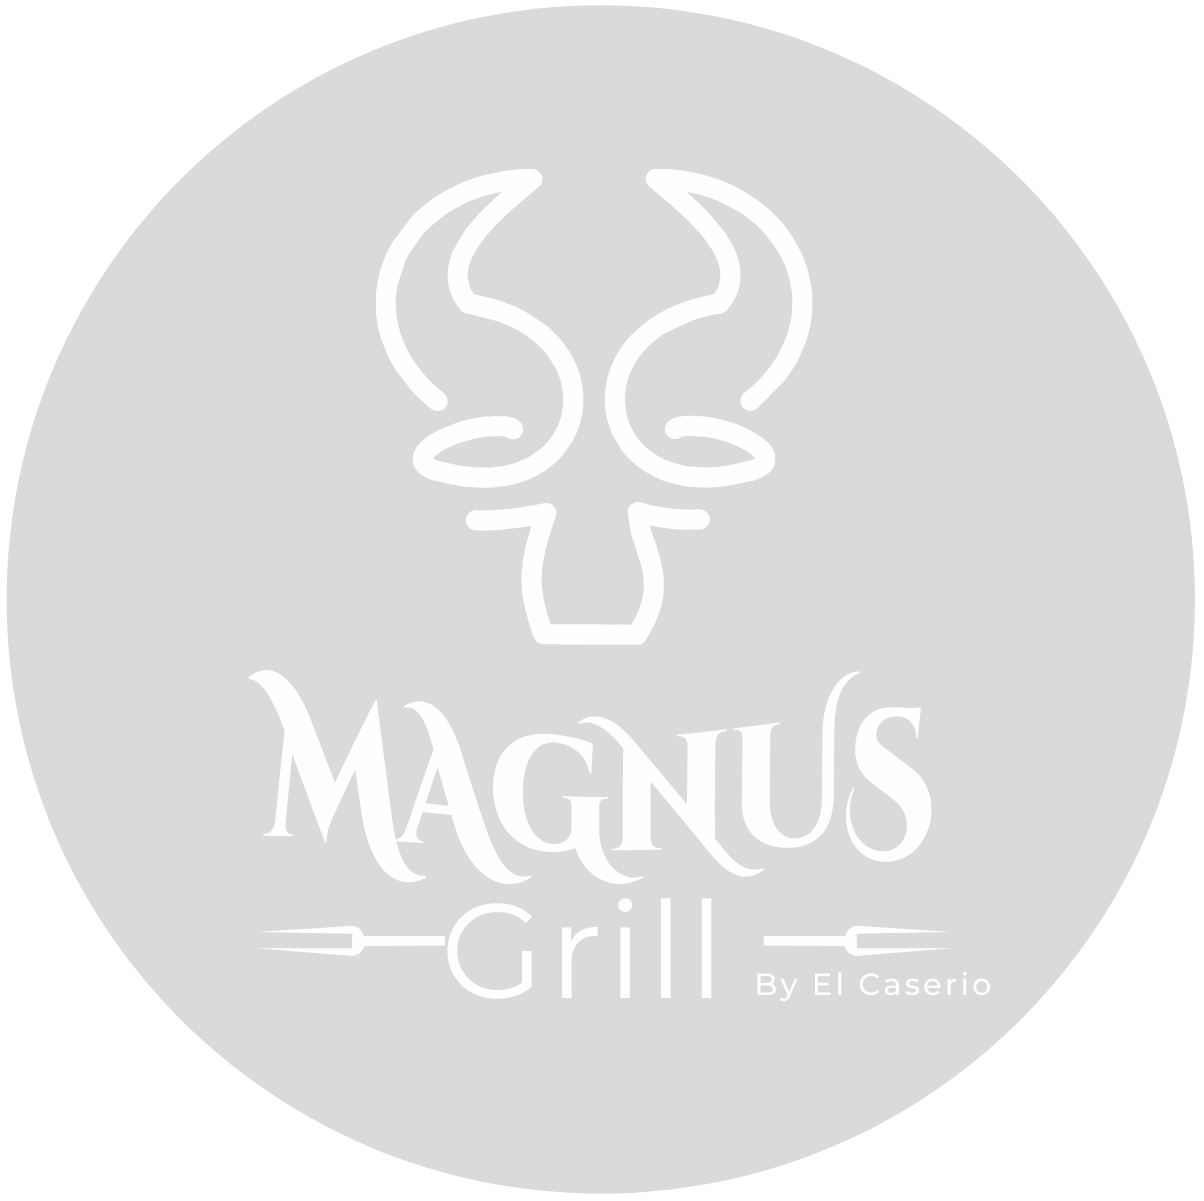 Magnus Grill By El Caserio Estepona